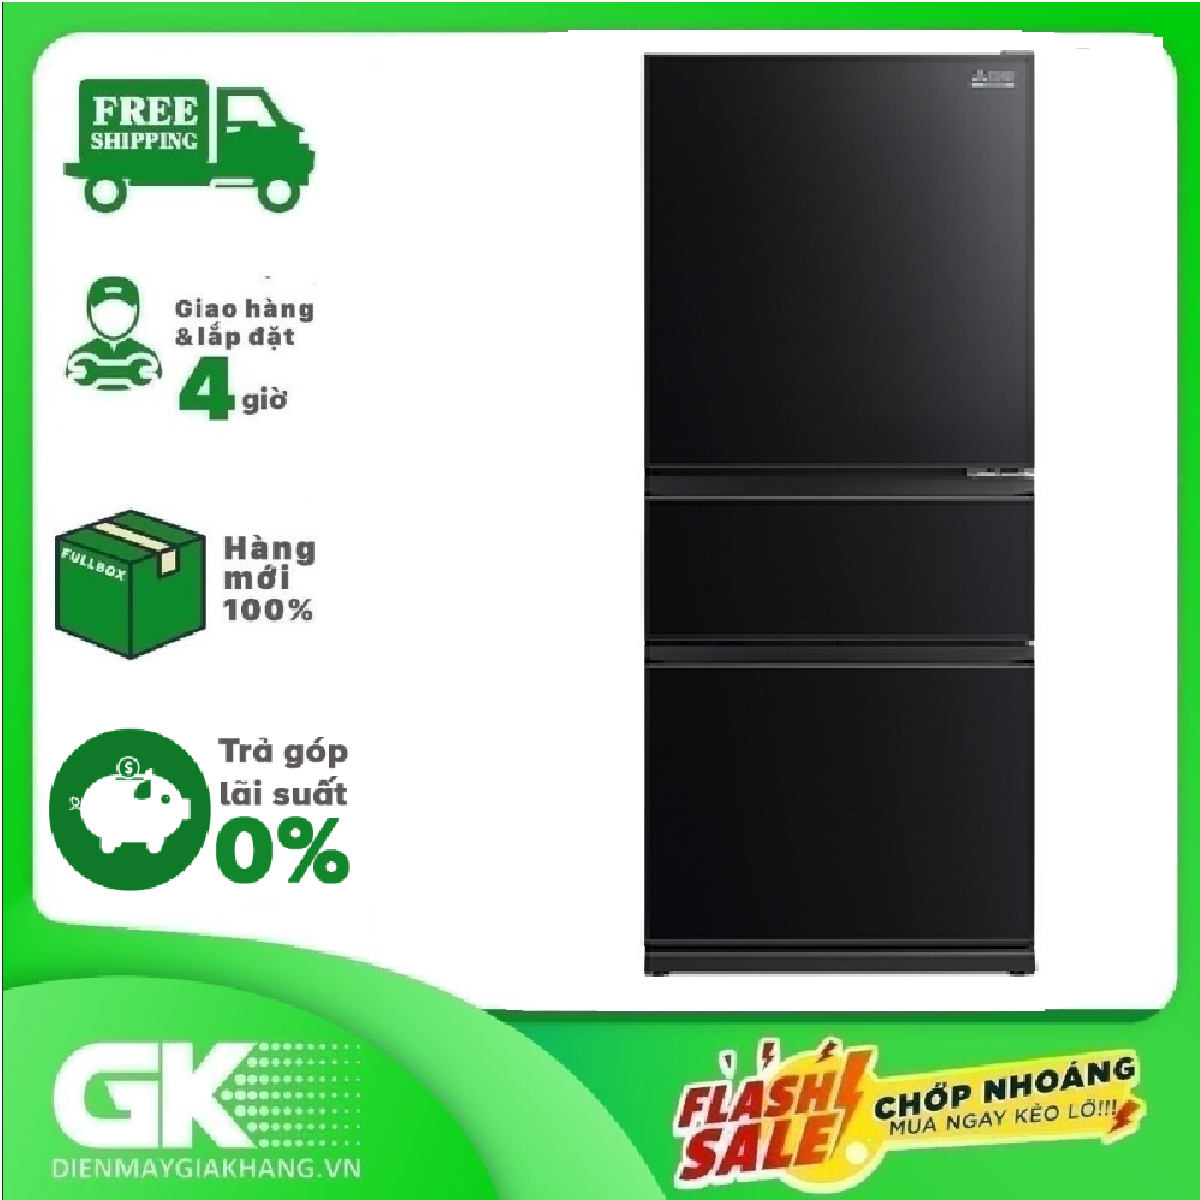 [Trả góp 0%]Tủ lạnh Mitsubishi MR-CGX41EN-GBK-V inverter 330 lít